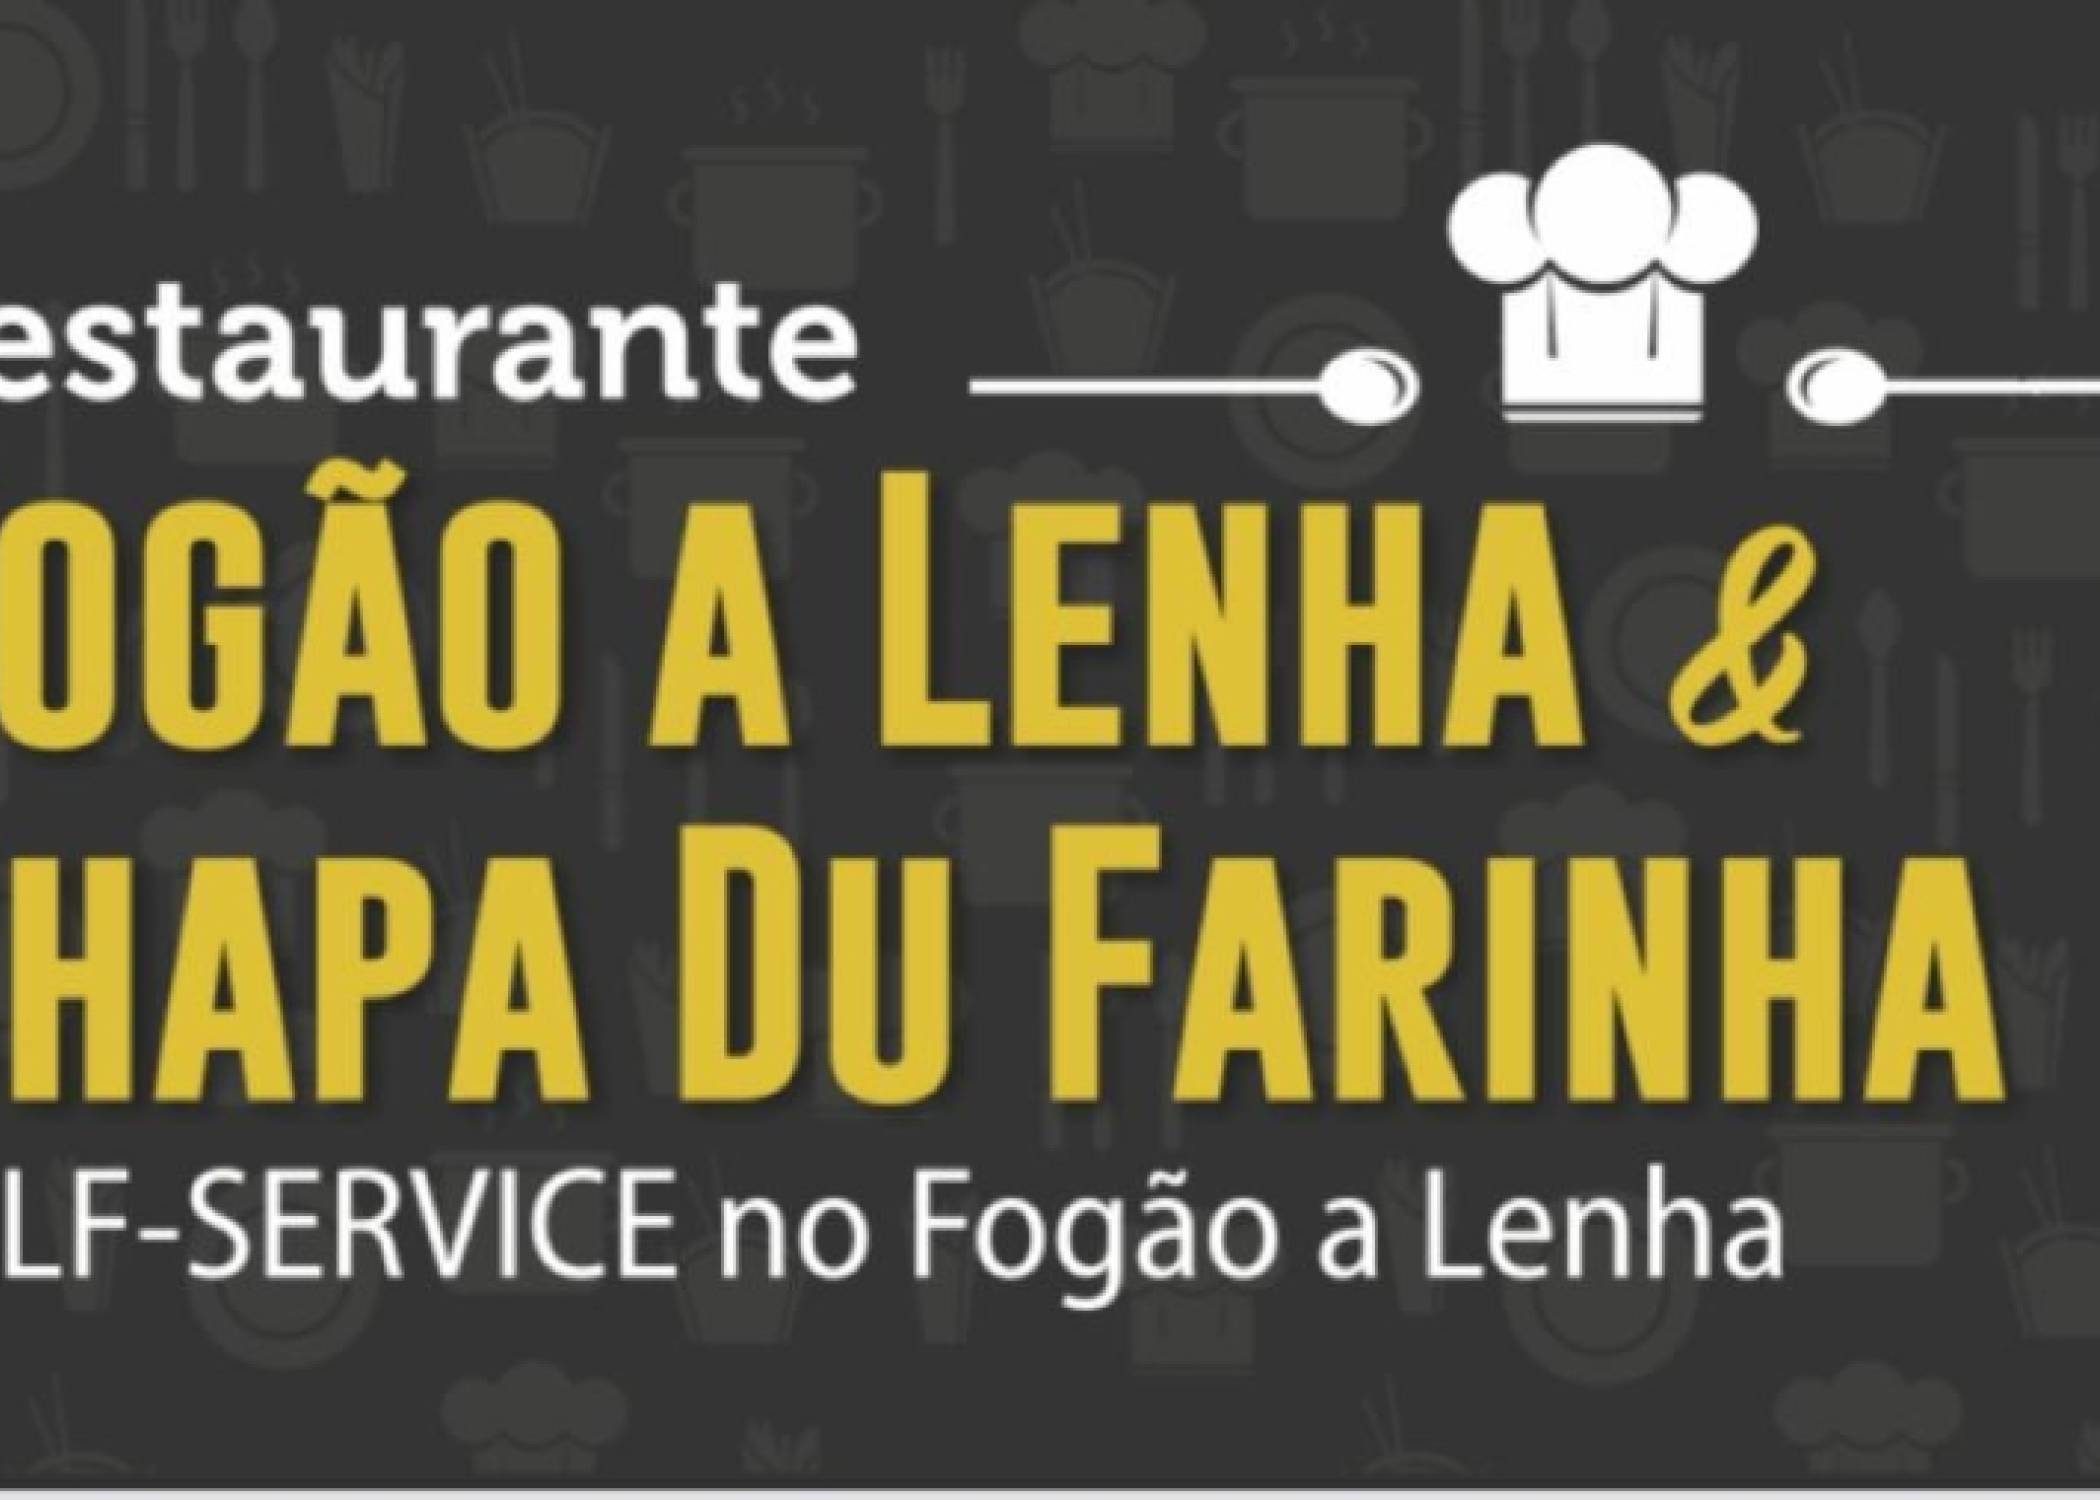 Restaurante Fogão a Lenha & Chapa Du Farinha